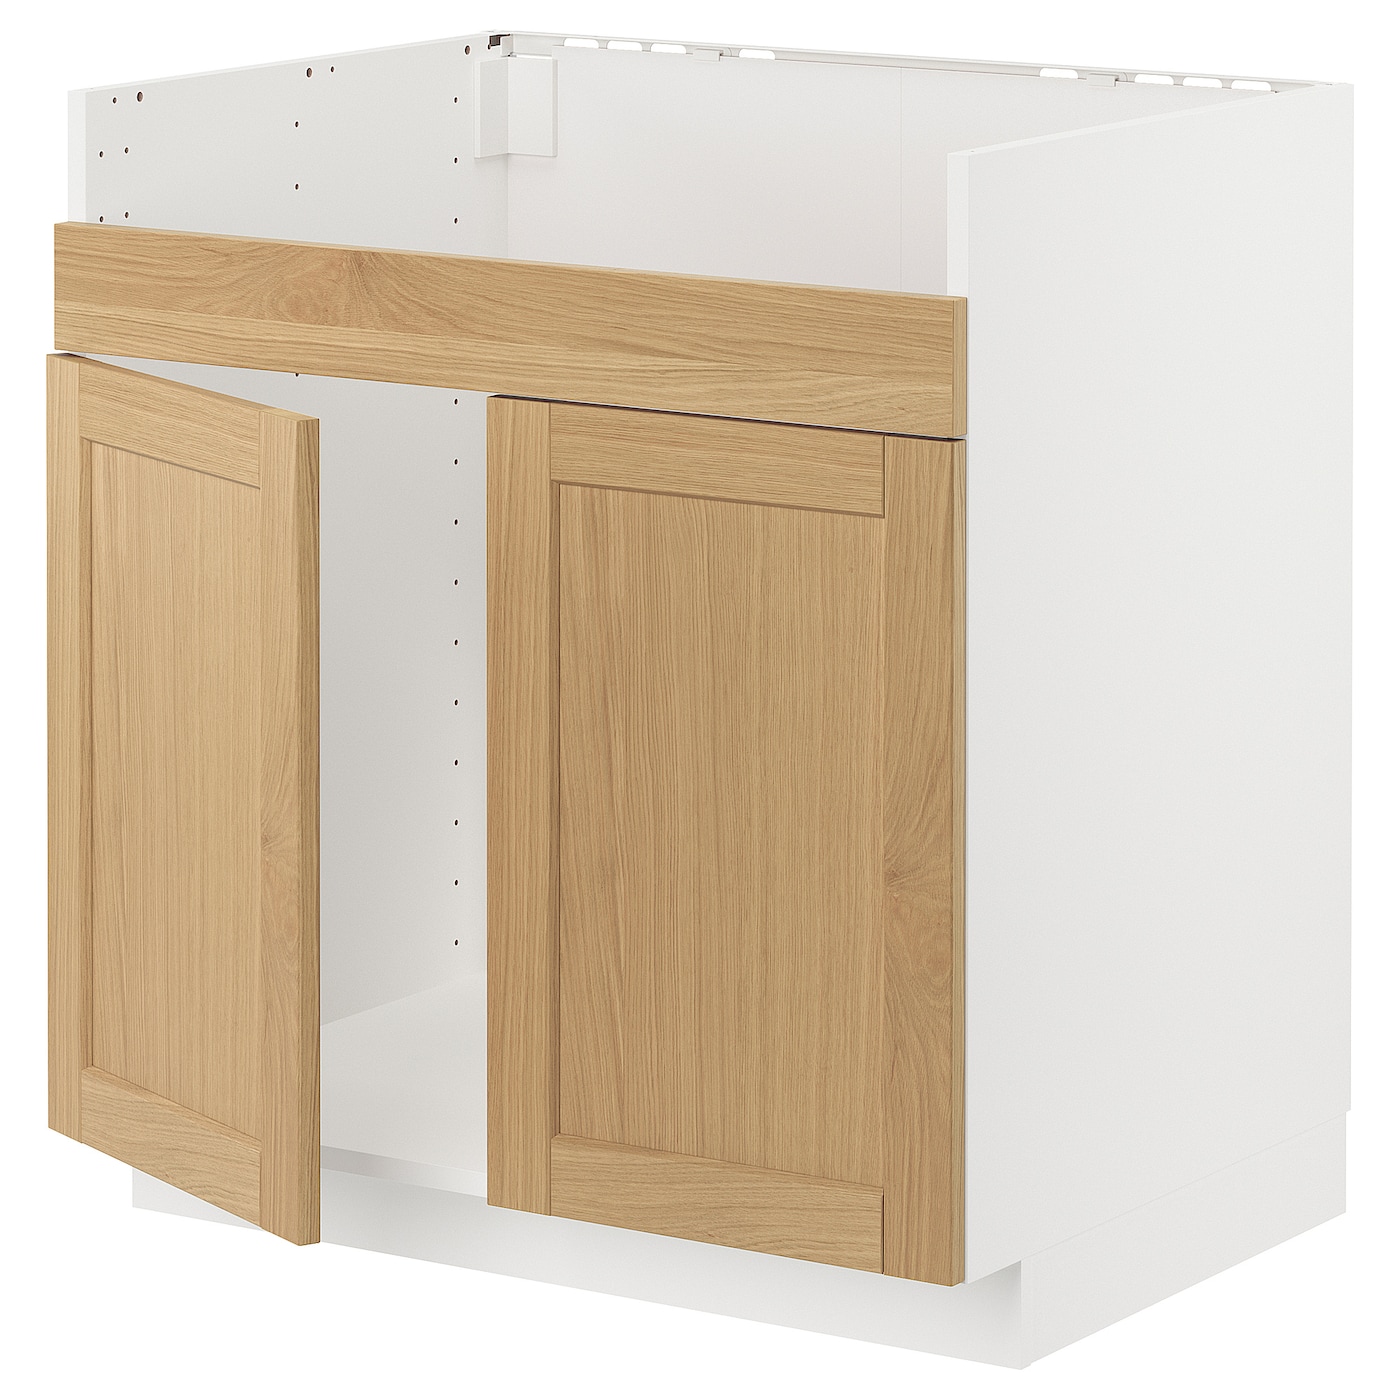 Напольный шкаф - METOD IKEA/ МЕТОД ИКЕА,  80х60 см, белый/под беленый дуб